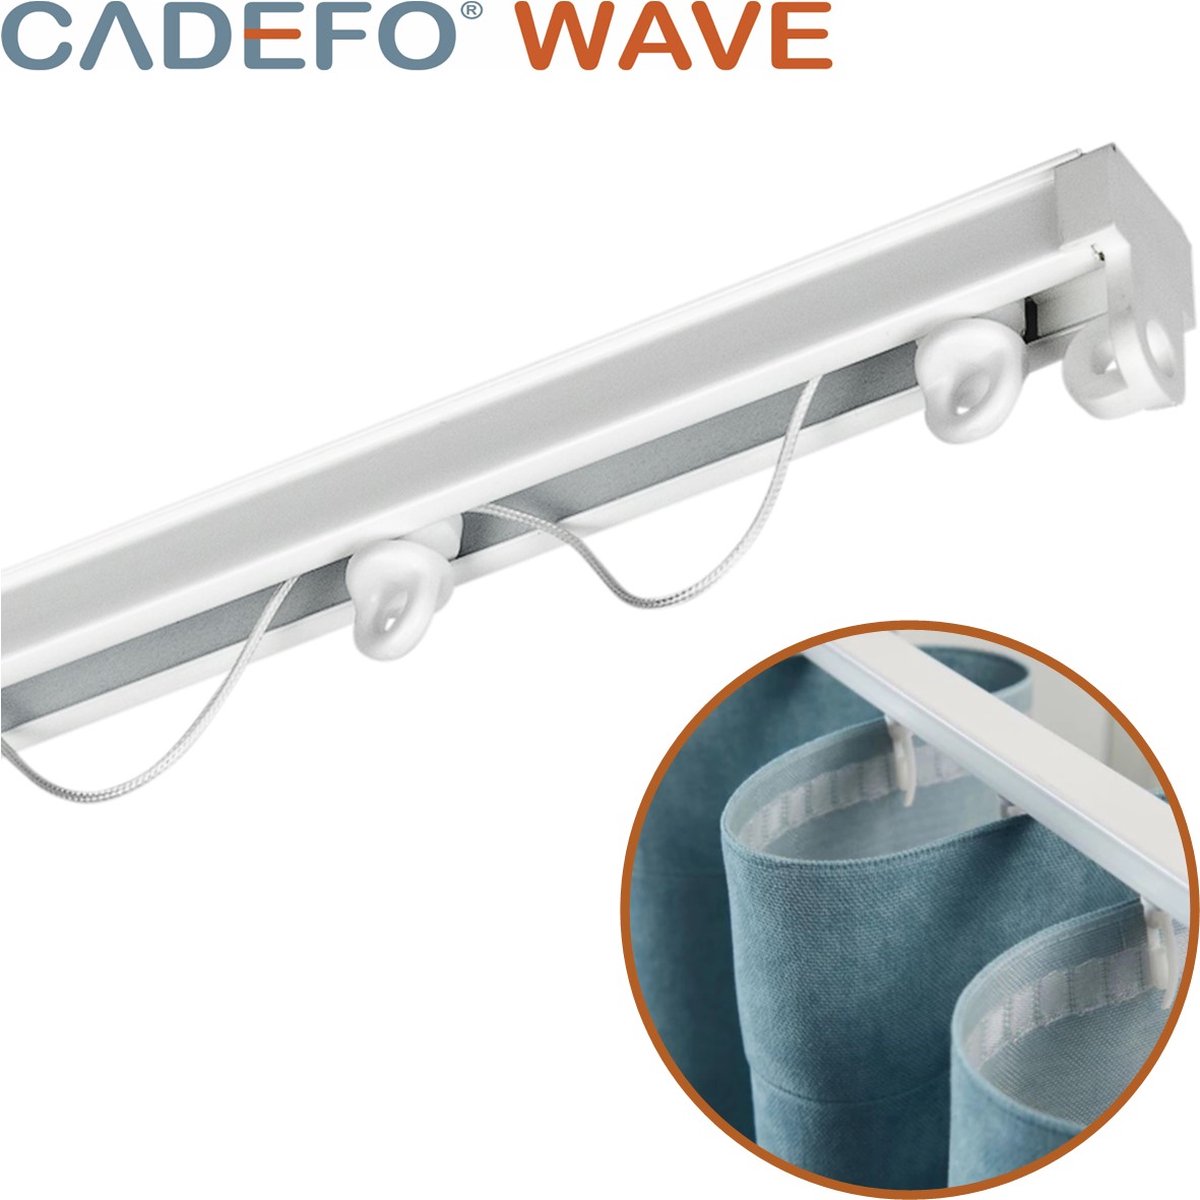 CADEFO WAVE (451 - 500 cm) Gordijnrails - Compleet op maat! - UIT 1 STUK - Leverbaar tot 6 meter - Plafondbevestiging - Lengte 474 cm